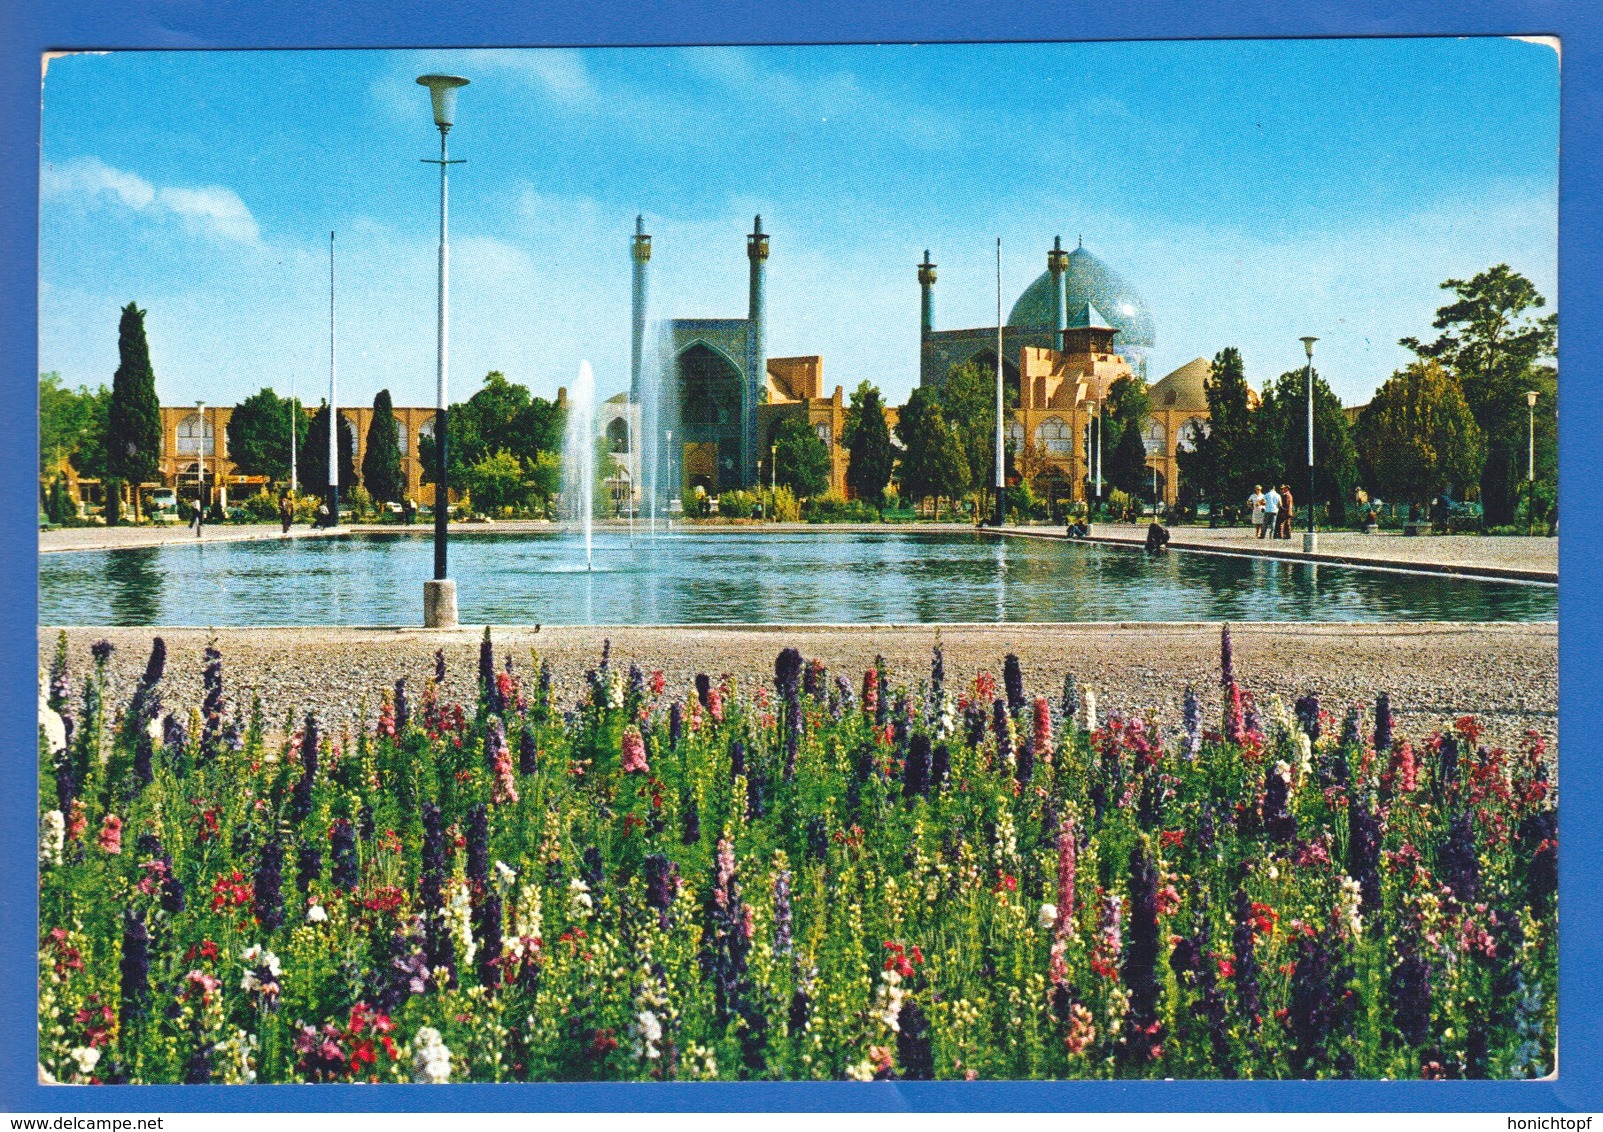 Iran; Isfahan; Naghshe Square - Iran